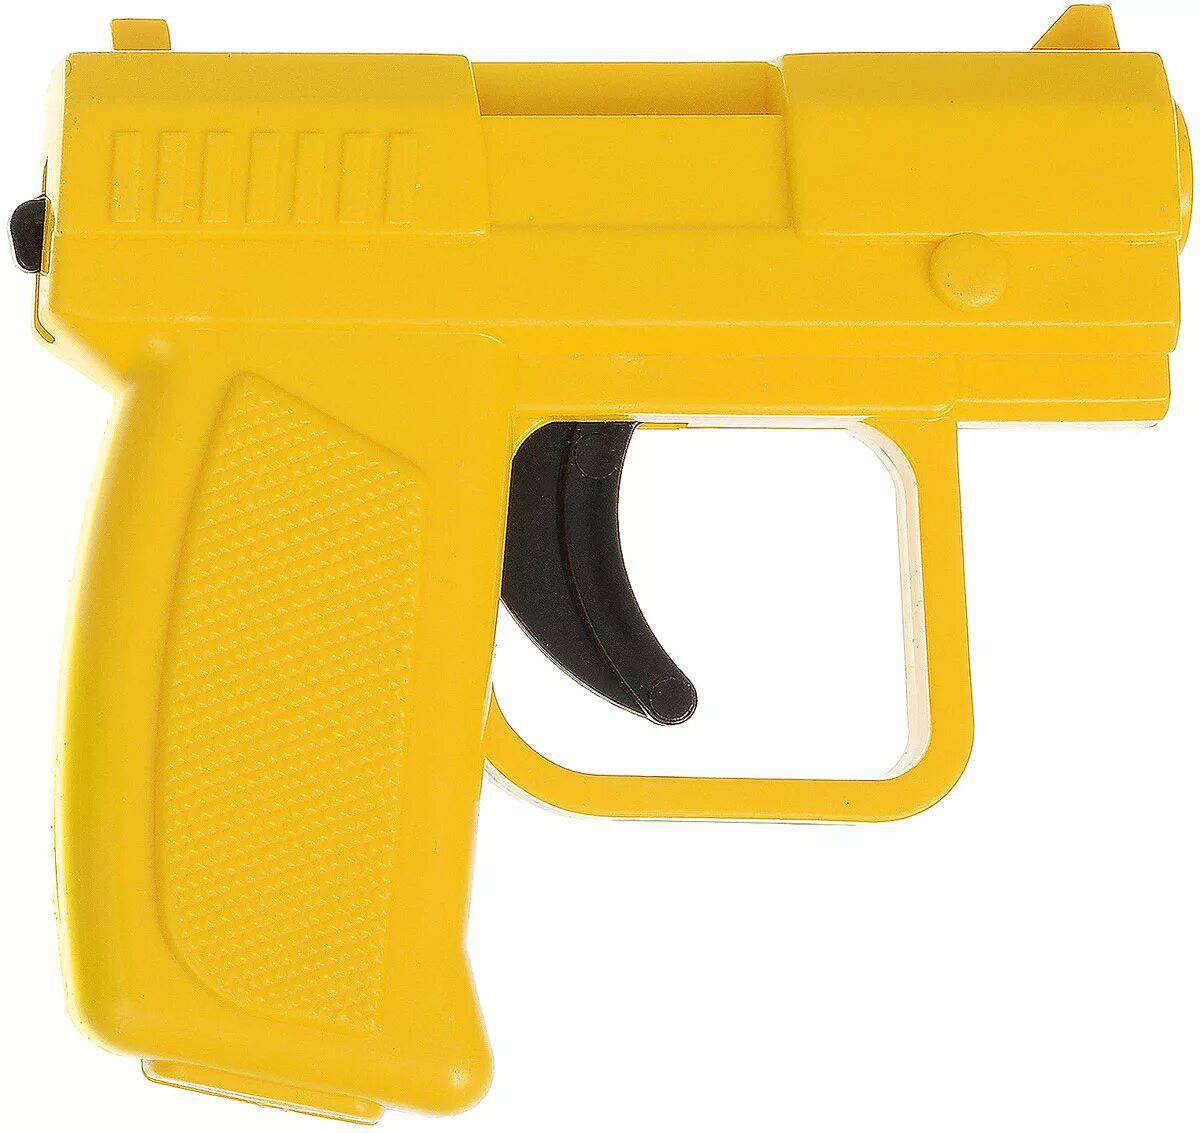 Пистолет для детей #19